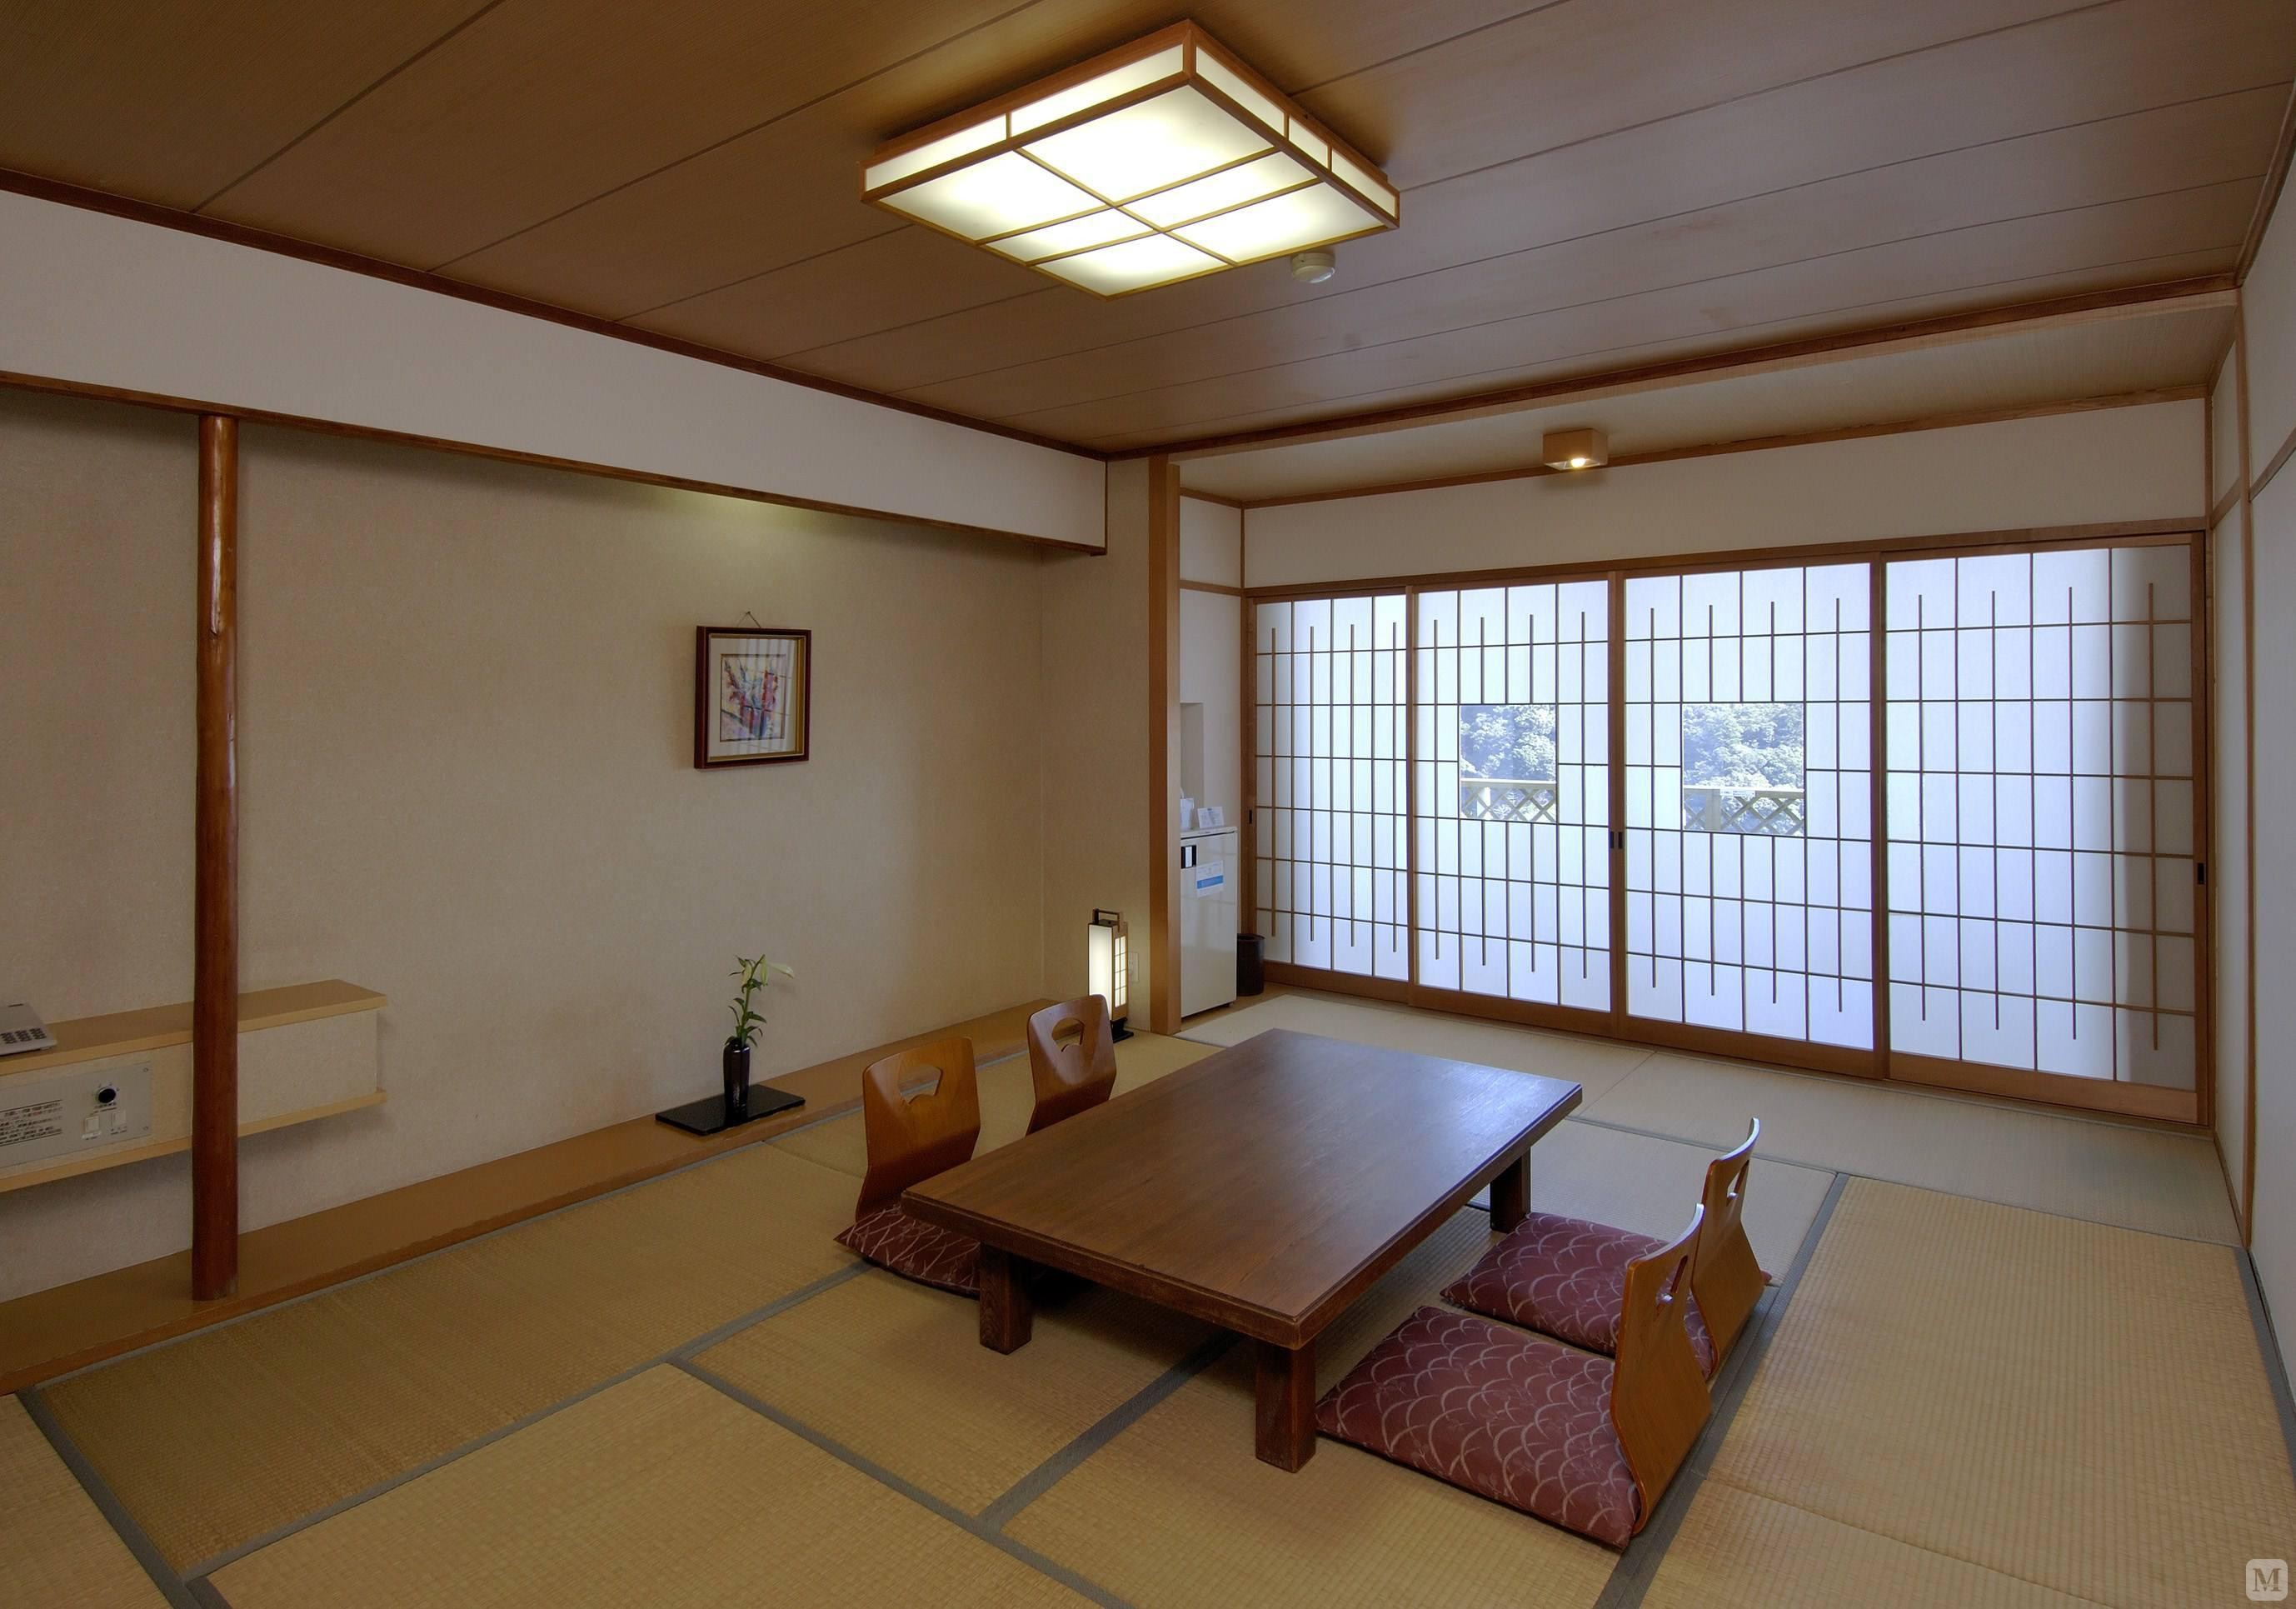 日式设计风格直接受日本和式建筑影响,讲究空间的流动与分隔,流动则为